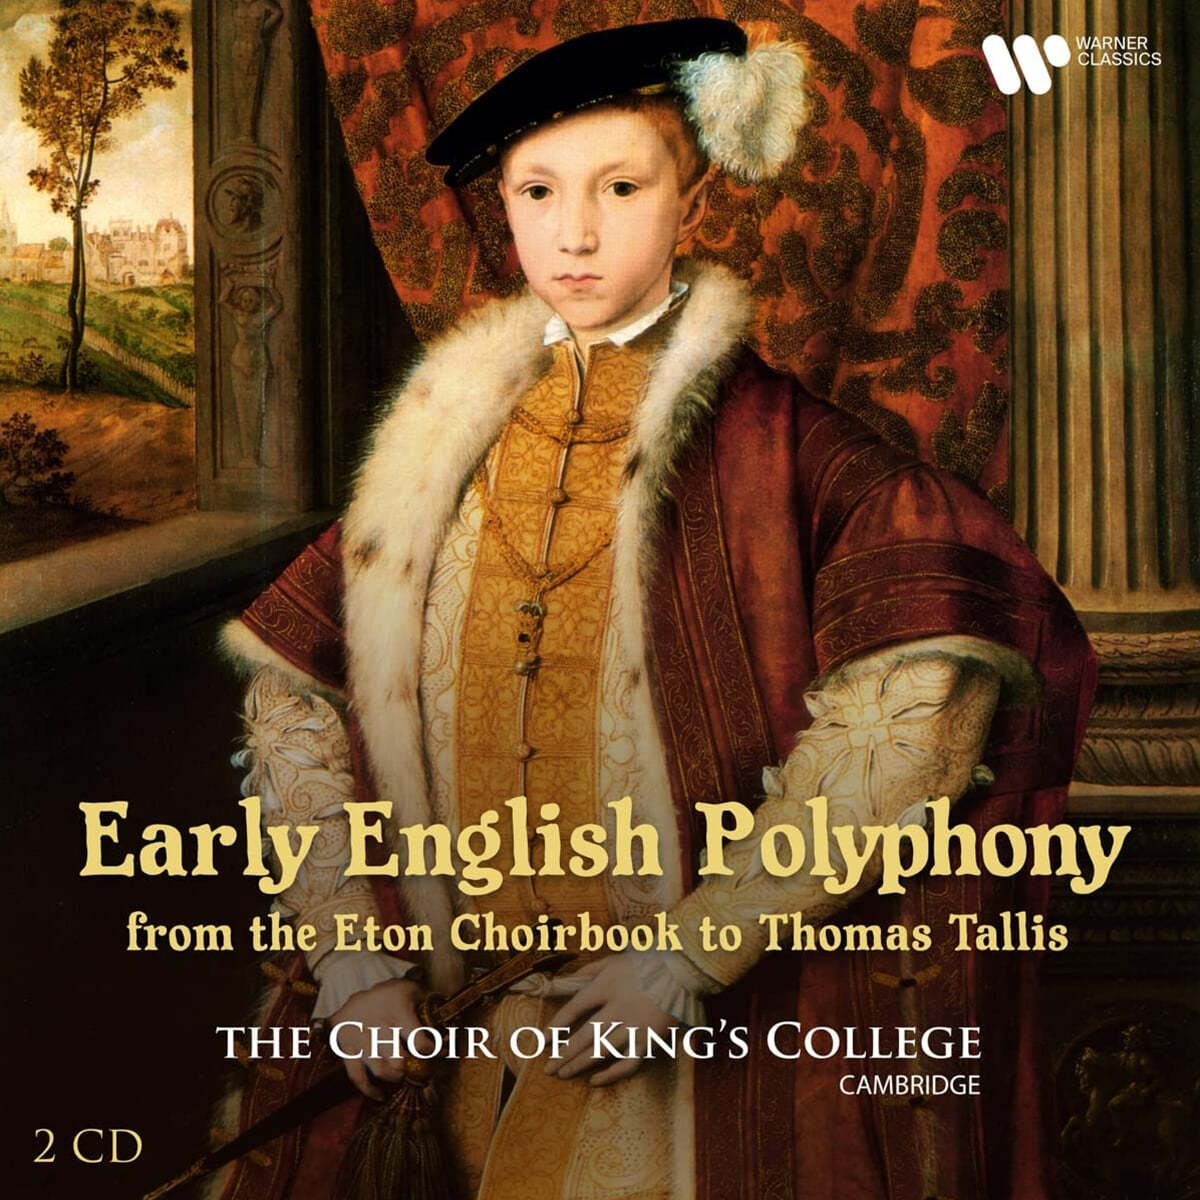 King's College Choir 영국의 초기 폴리포니 - 캠브리지 킹스 칼리지 합창단 (Early English Polyphony) 